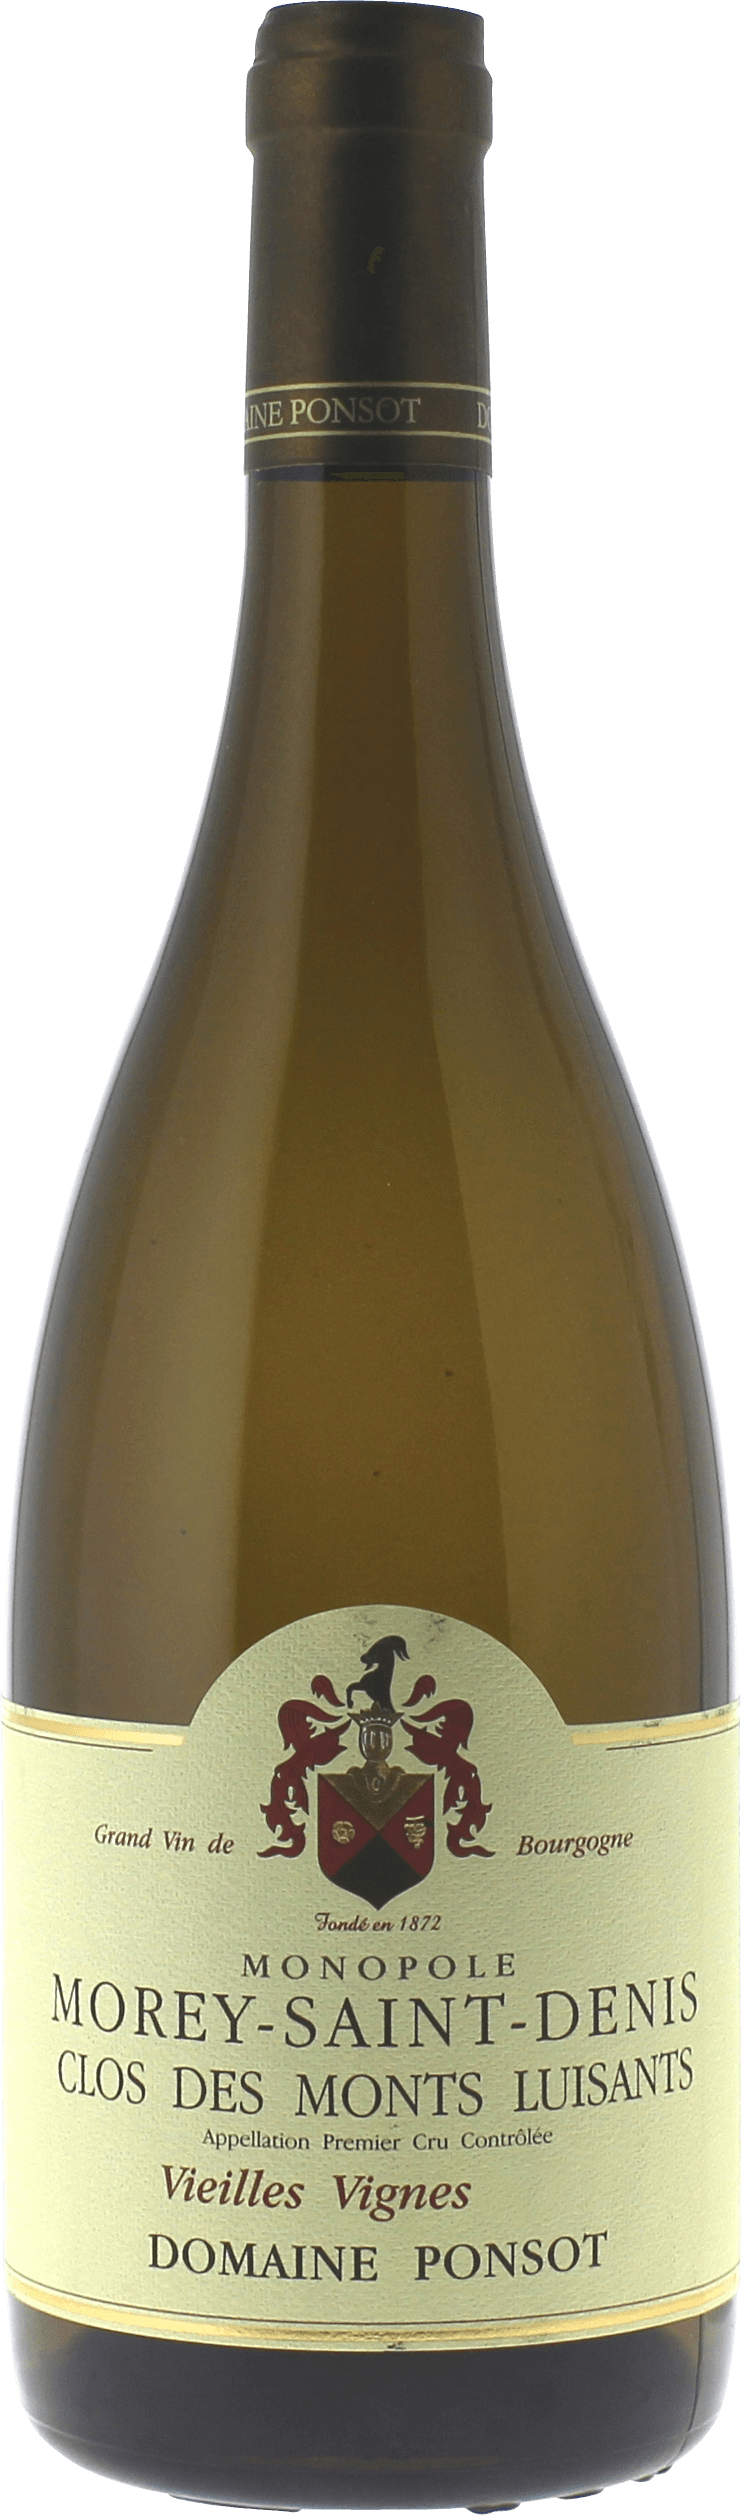 Morey saint denis 1er cru clos des monts luisants vieilles vignes 2018 Domaine PONSOT, Bourgogne blanc